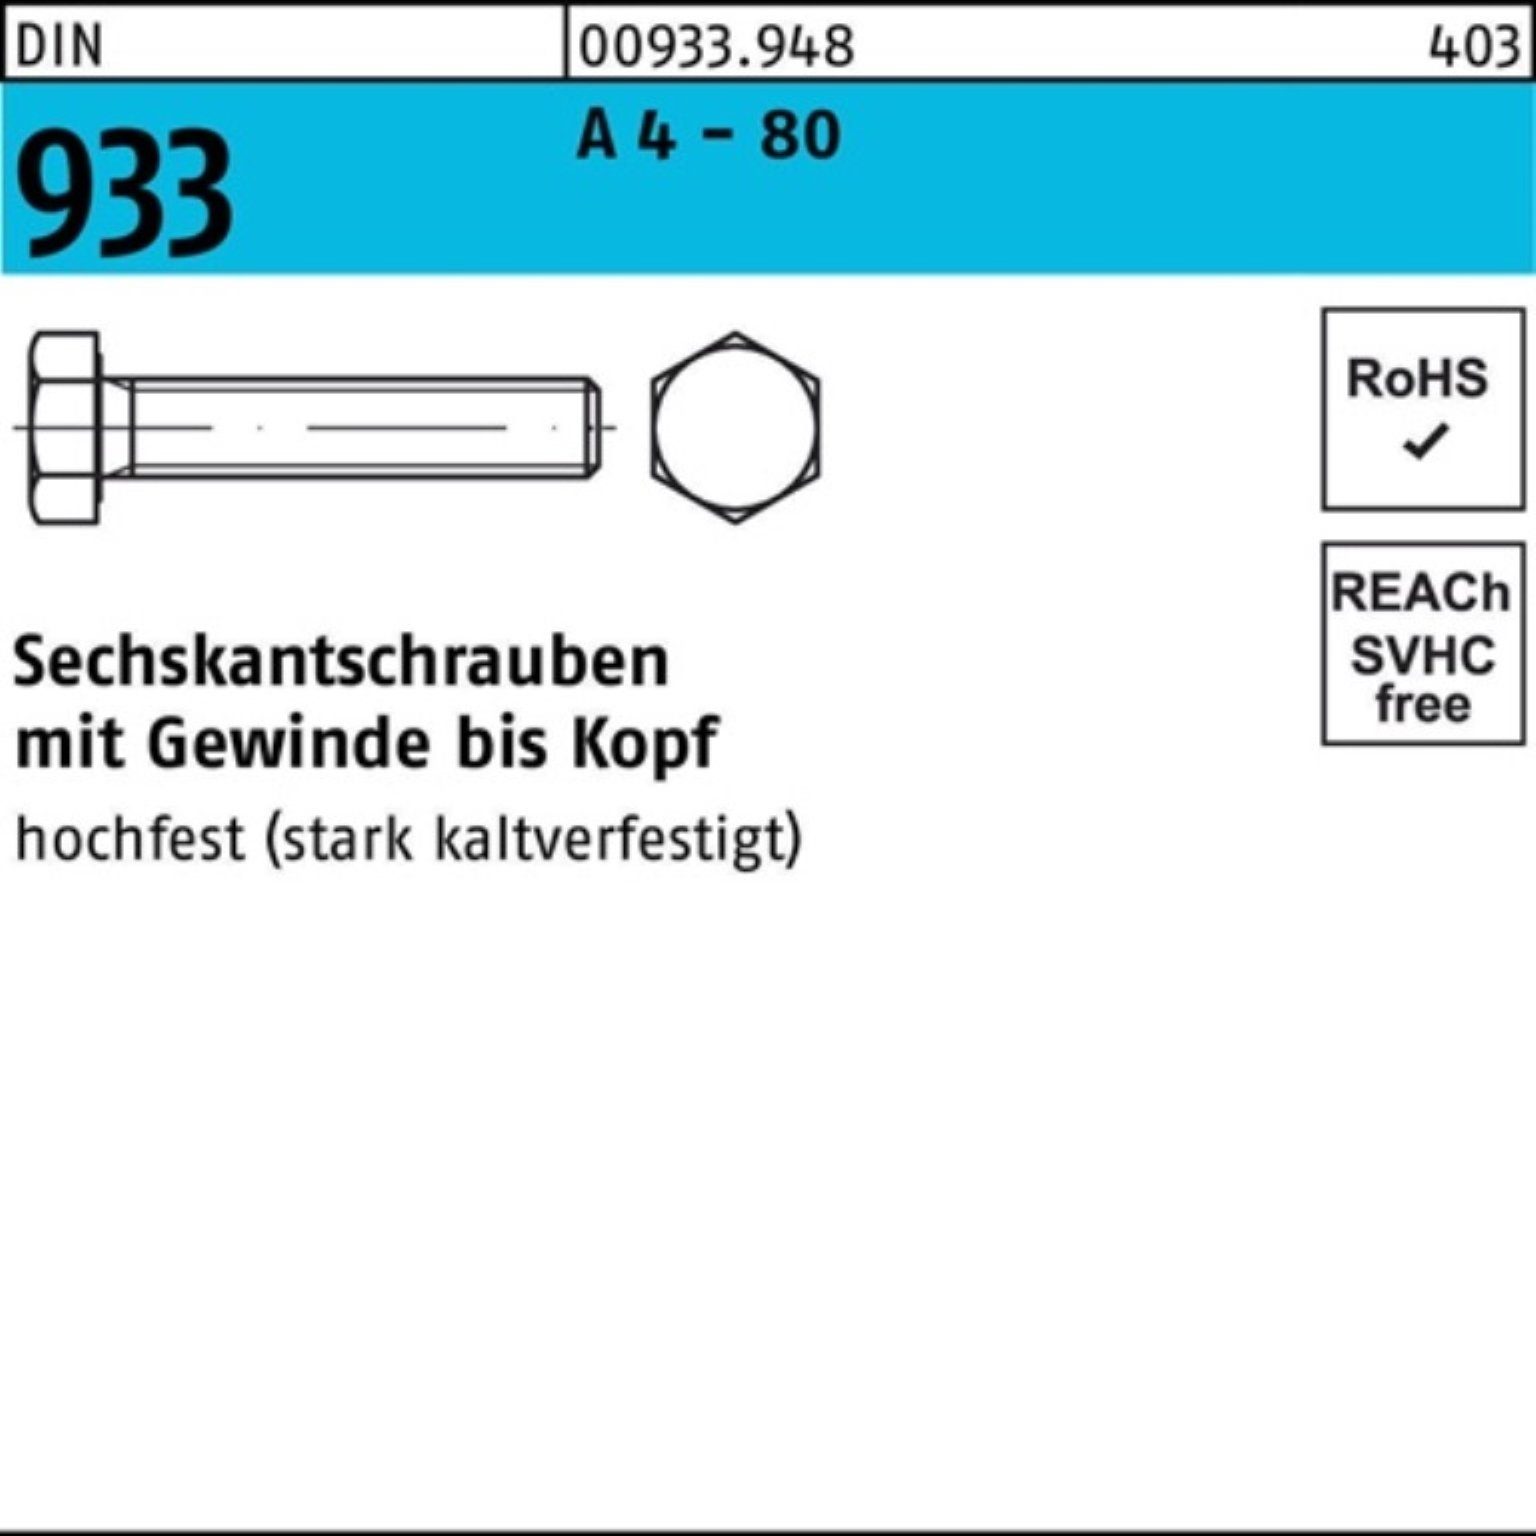 Reyher Sechskantschraube 500er Pack Sechskantschraube DIN 933 VG M5x 10 A 4 - 80 500 Stück DIN